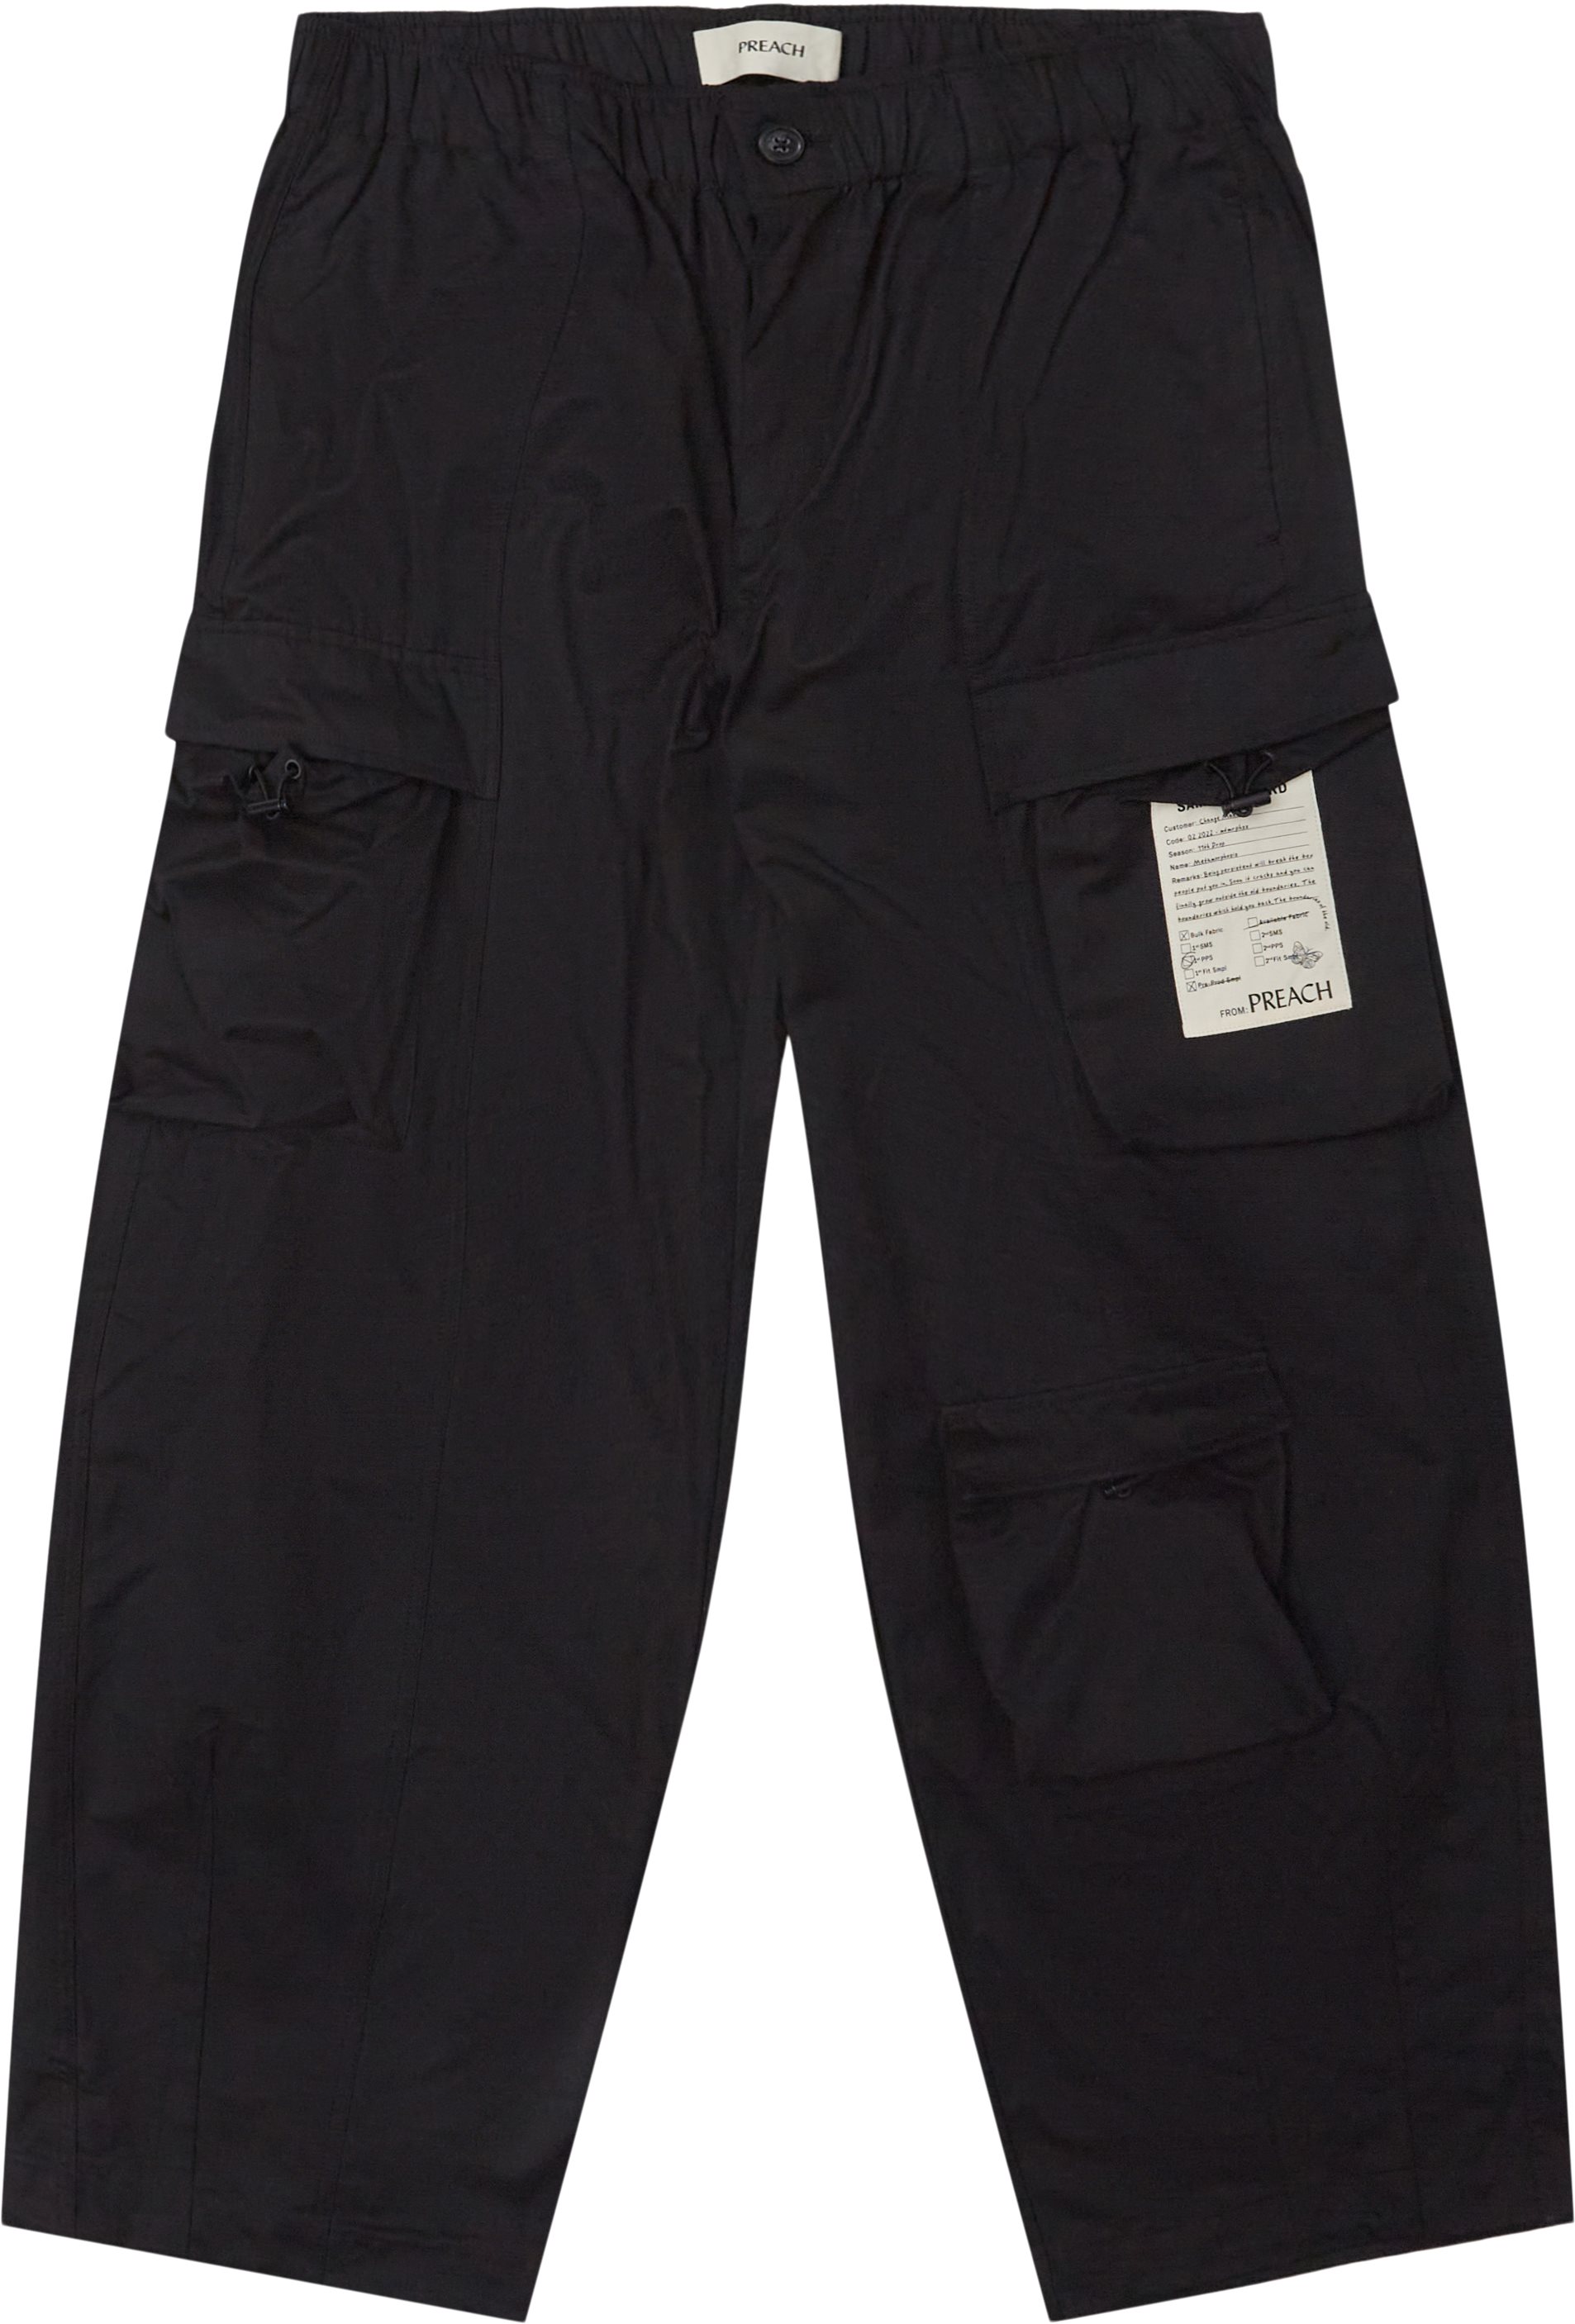 Pocket Baggy Pants - Bukser - Baggy fit - Sort